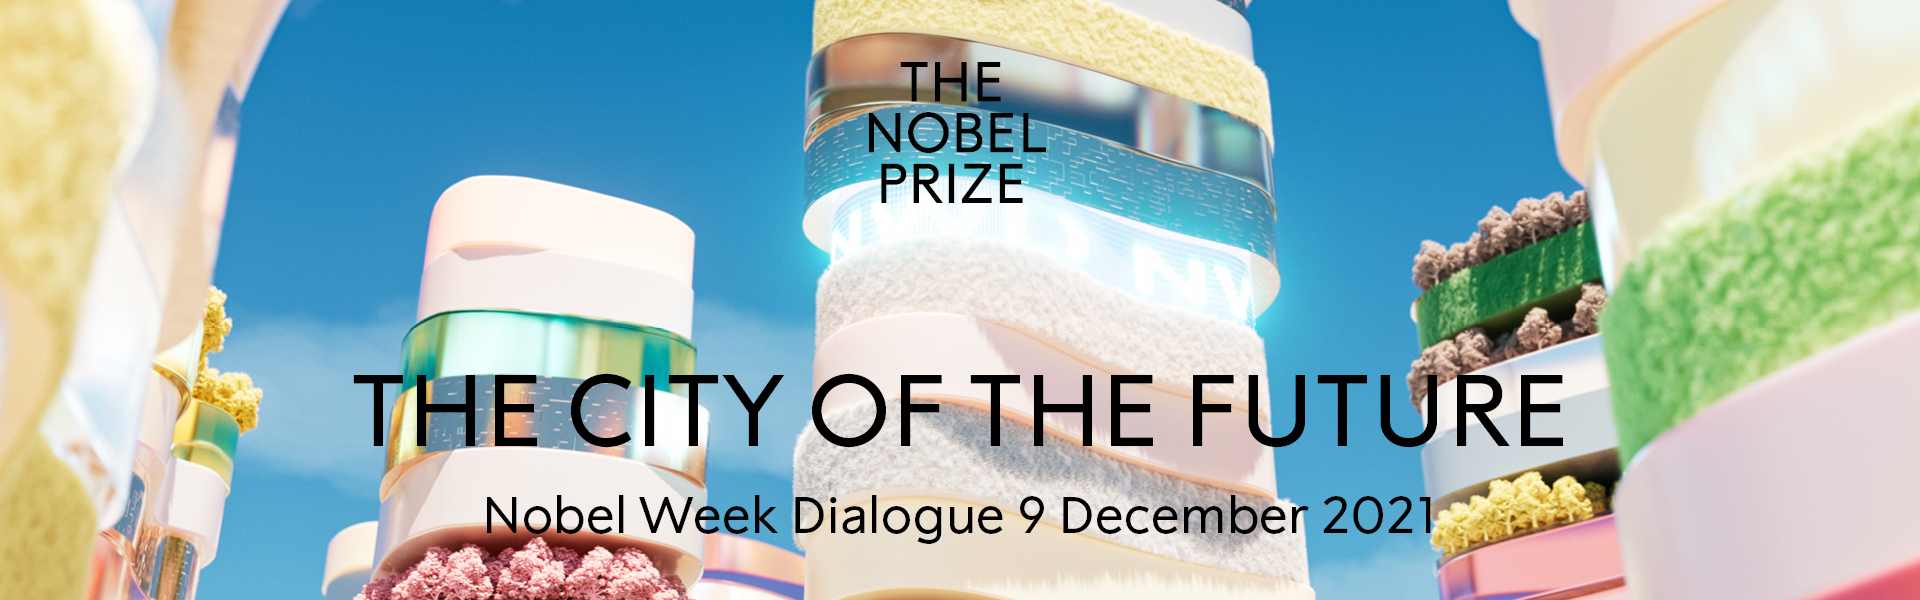 Header image for Nobel Week Dialogue 2021